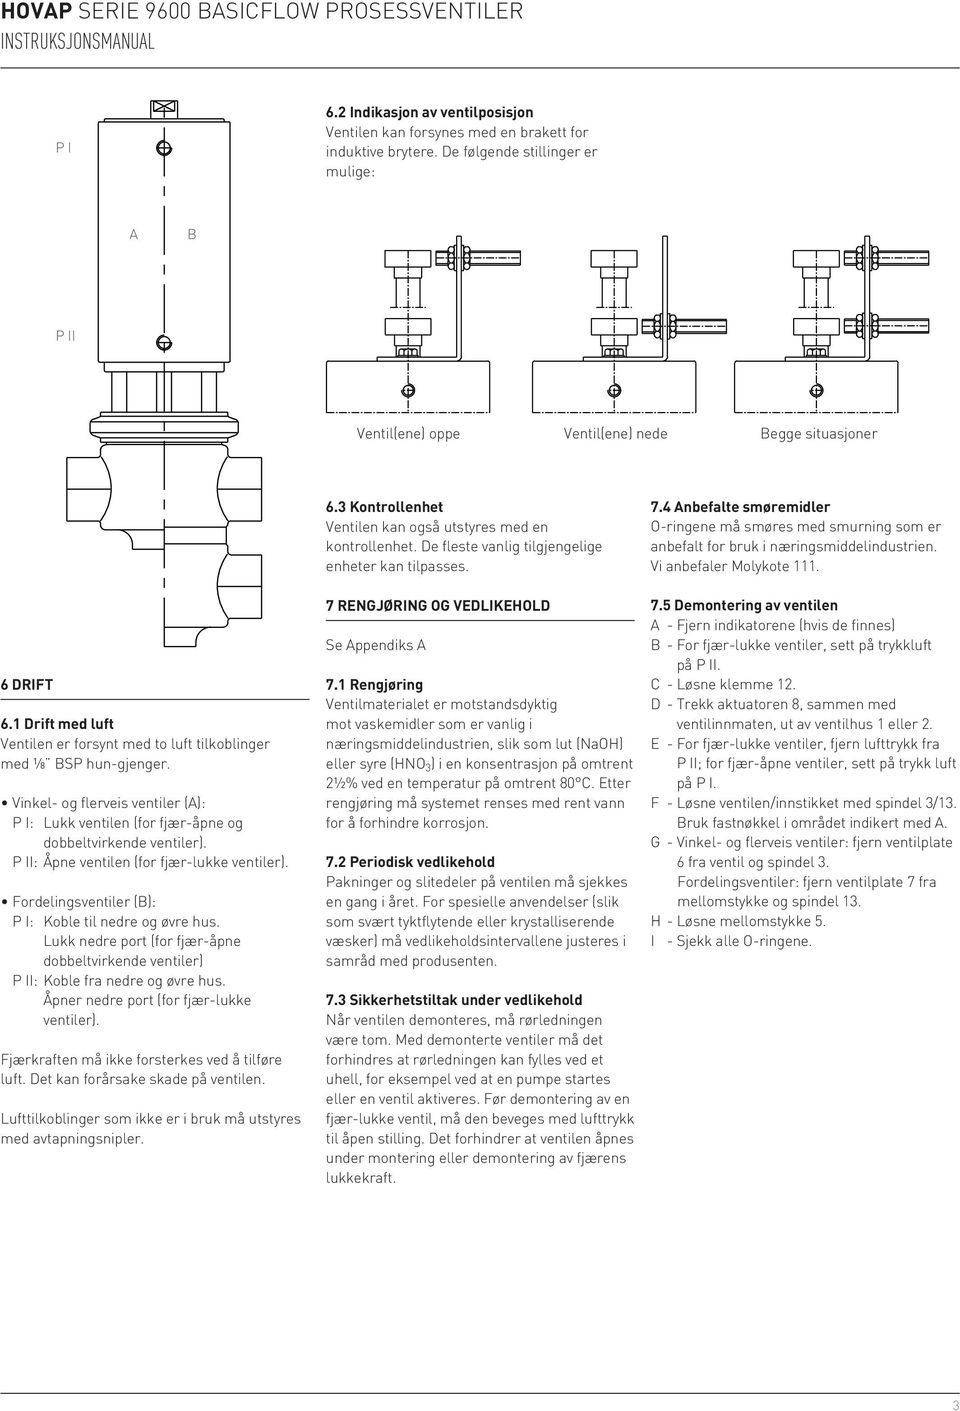 Vinkel- og flerveis ventiler (A): P I: Lukk ventilen (for fjær-åpne og dobbeltvirkende ventiler). P II: Åpne ventilen (for fjær-lukke ventiler).